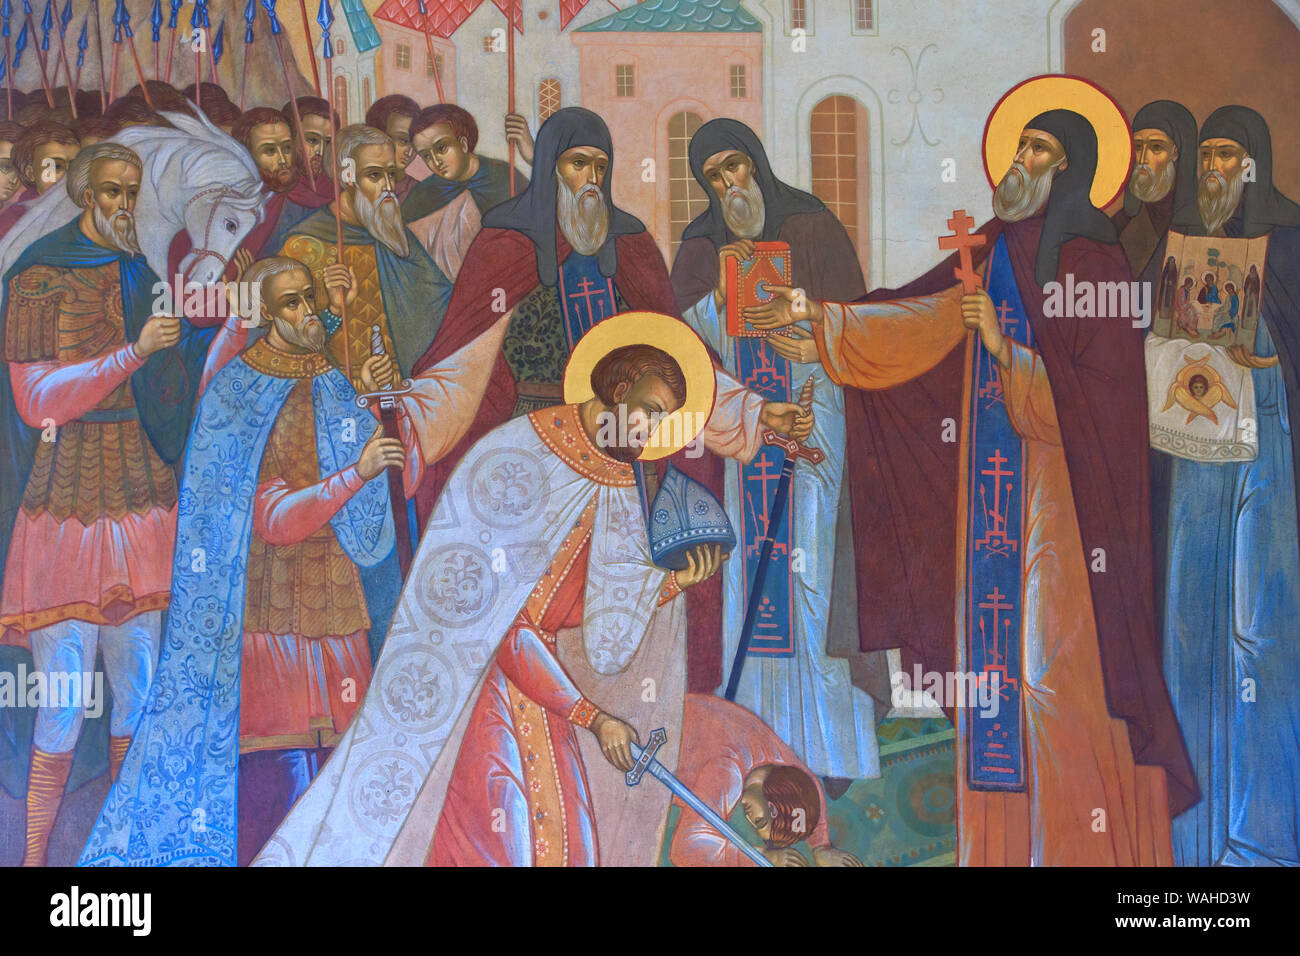 Fresko des Heiligen Sergius von radonezh empfangen Segen an den Wänden der Dreifaltigkeit Lavra des Heiligen Sergius in Sergiev Posad, Russland Stockfoto